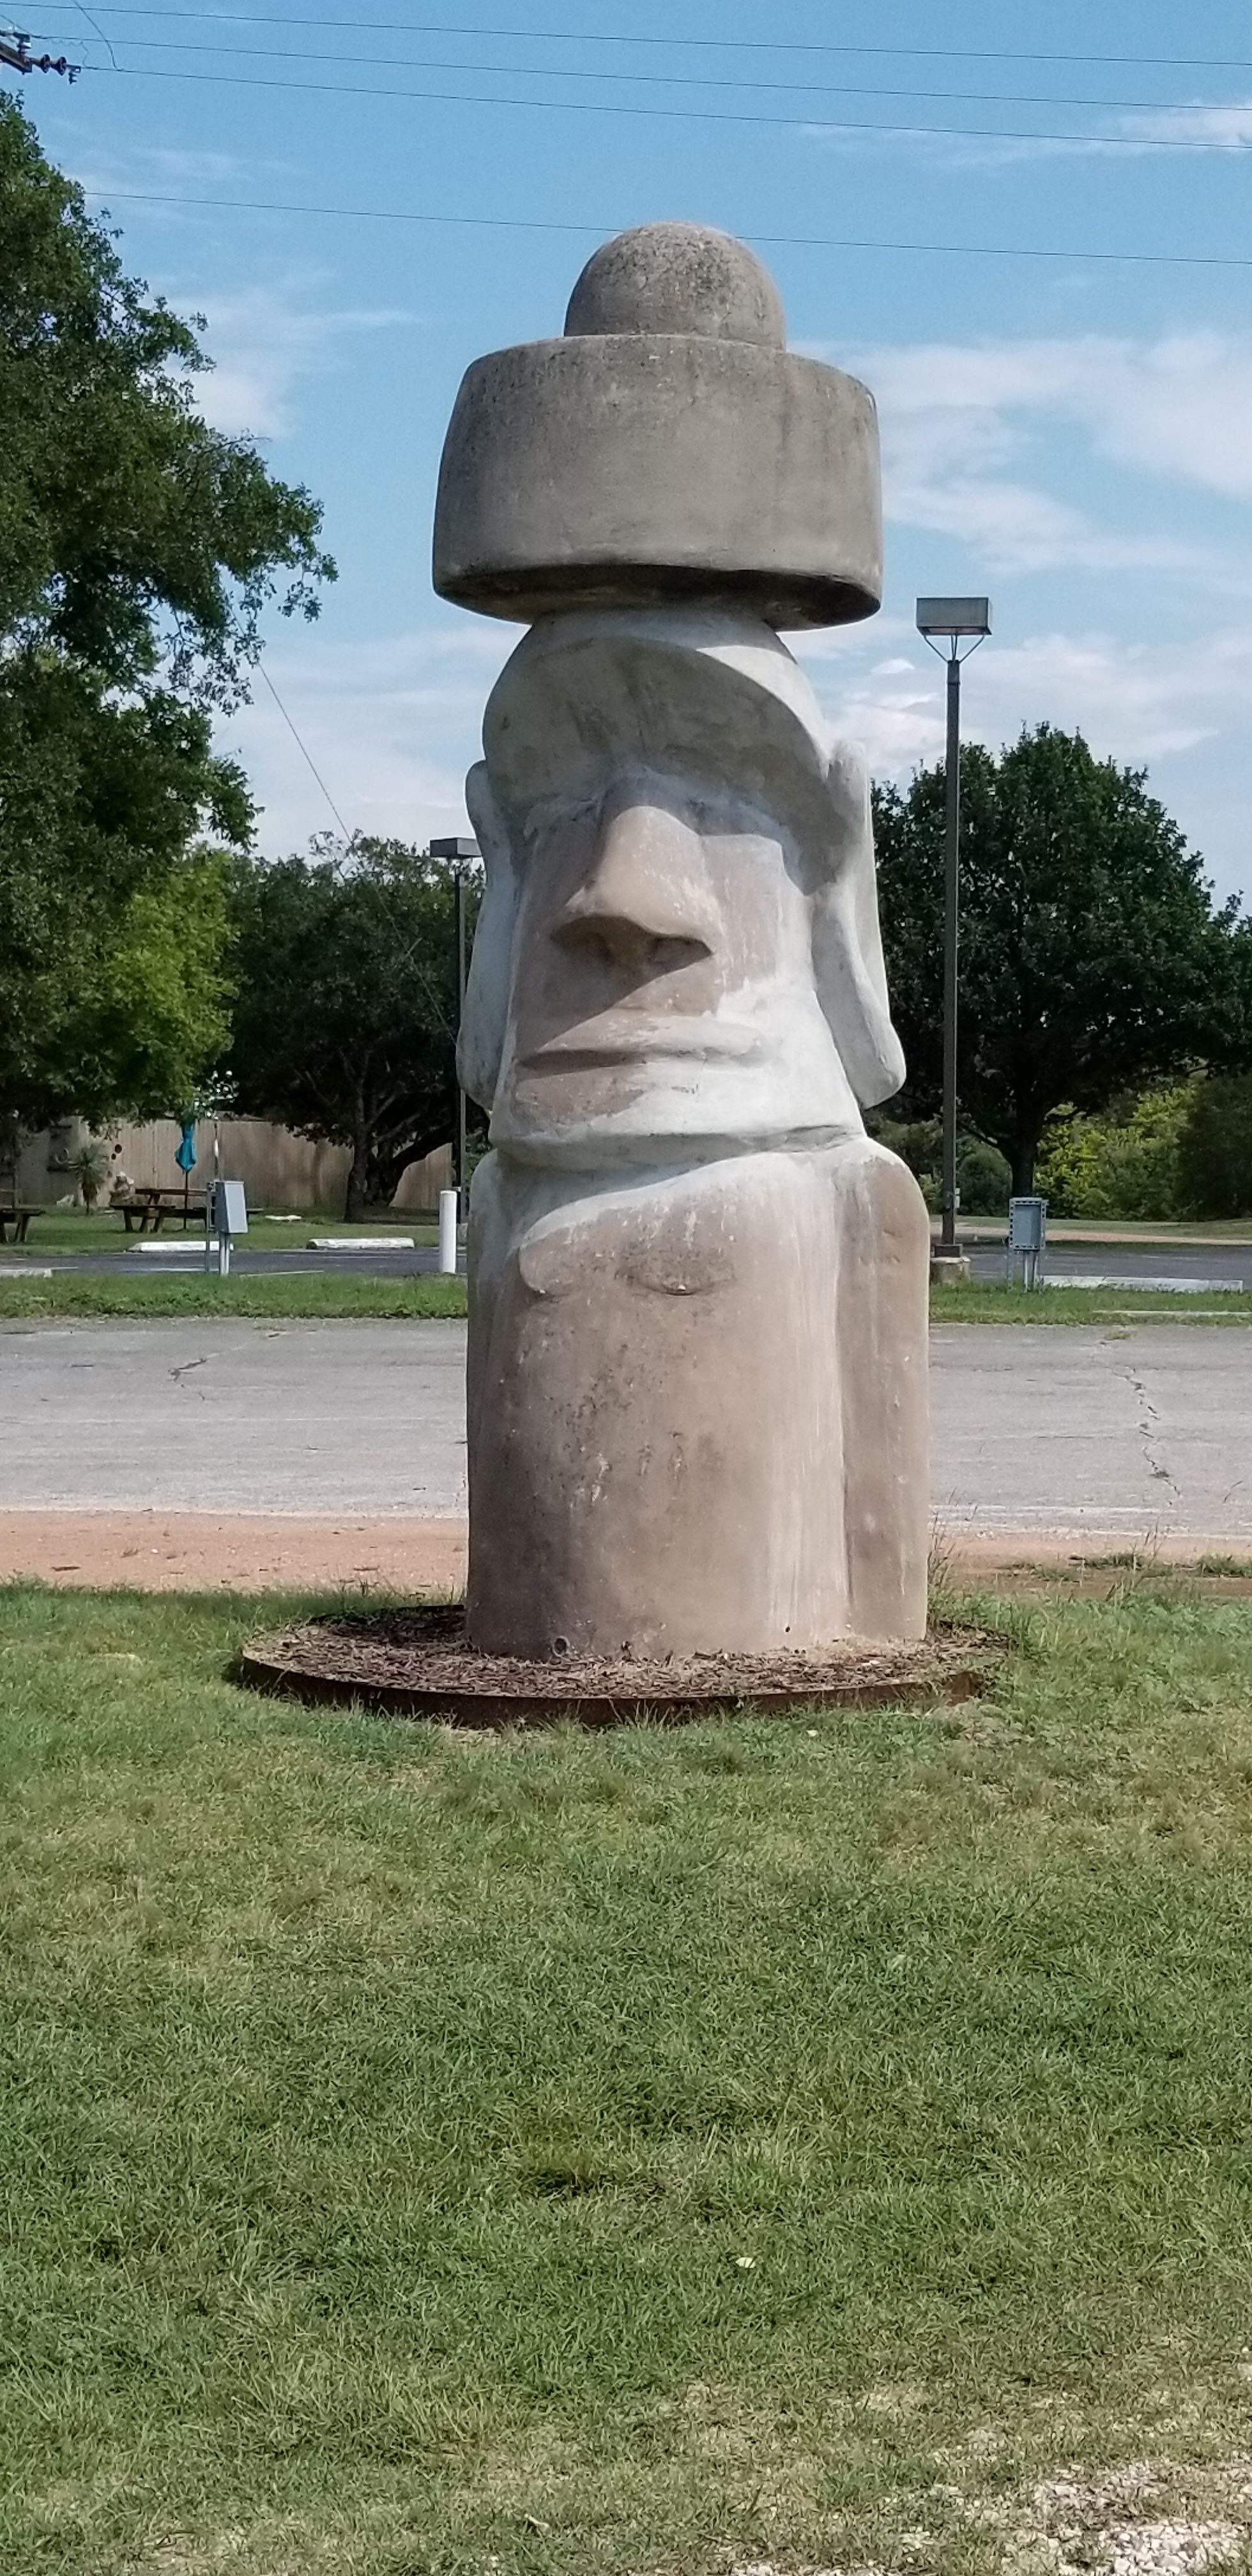 2nd Easter Island head